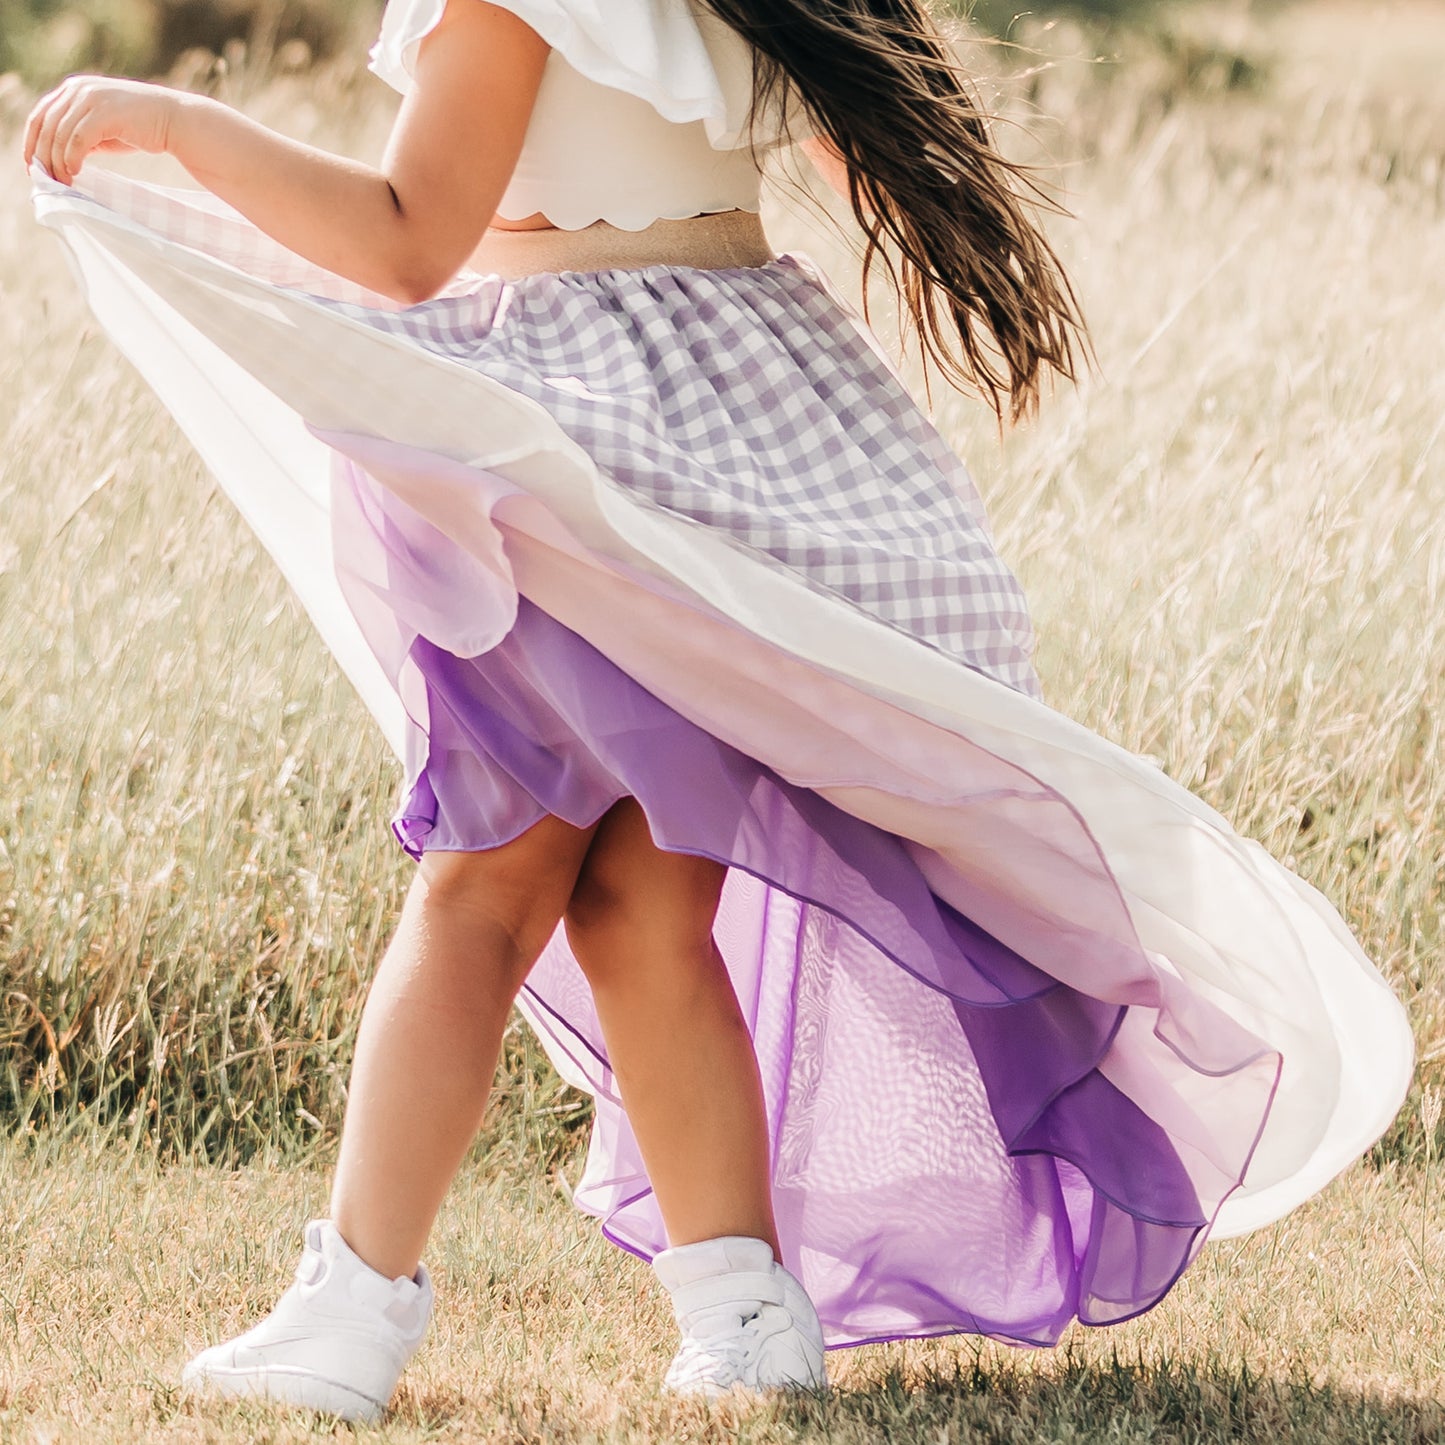 
                  
                    Lavender Gingham Skirt - Children's
                  
                